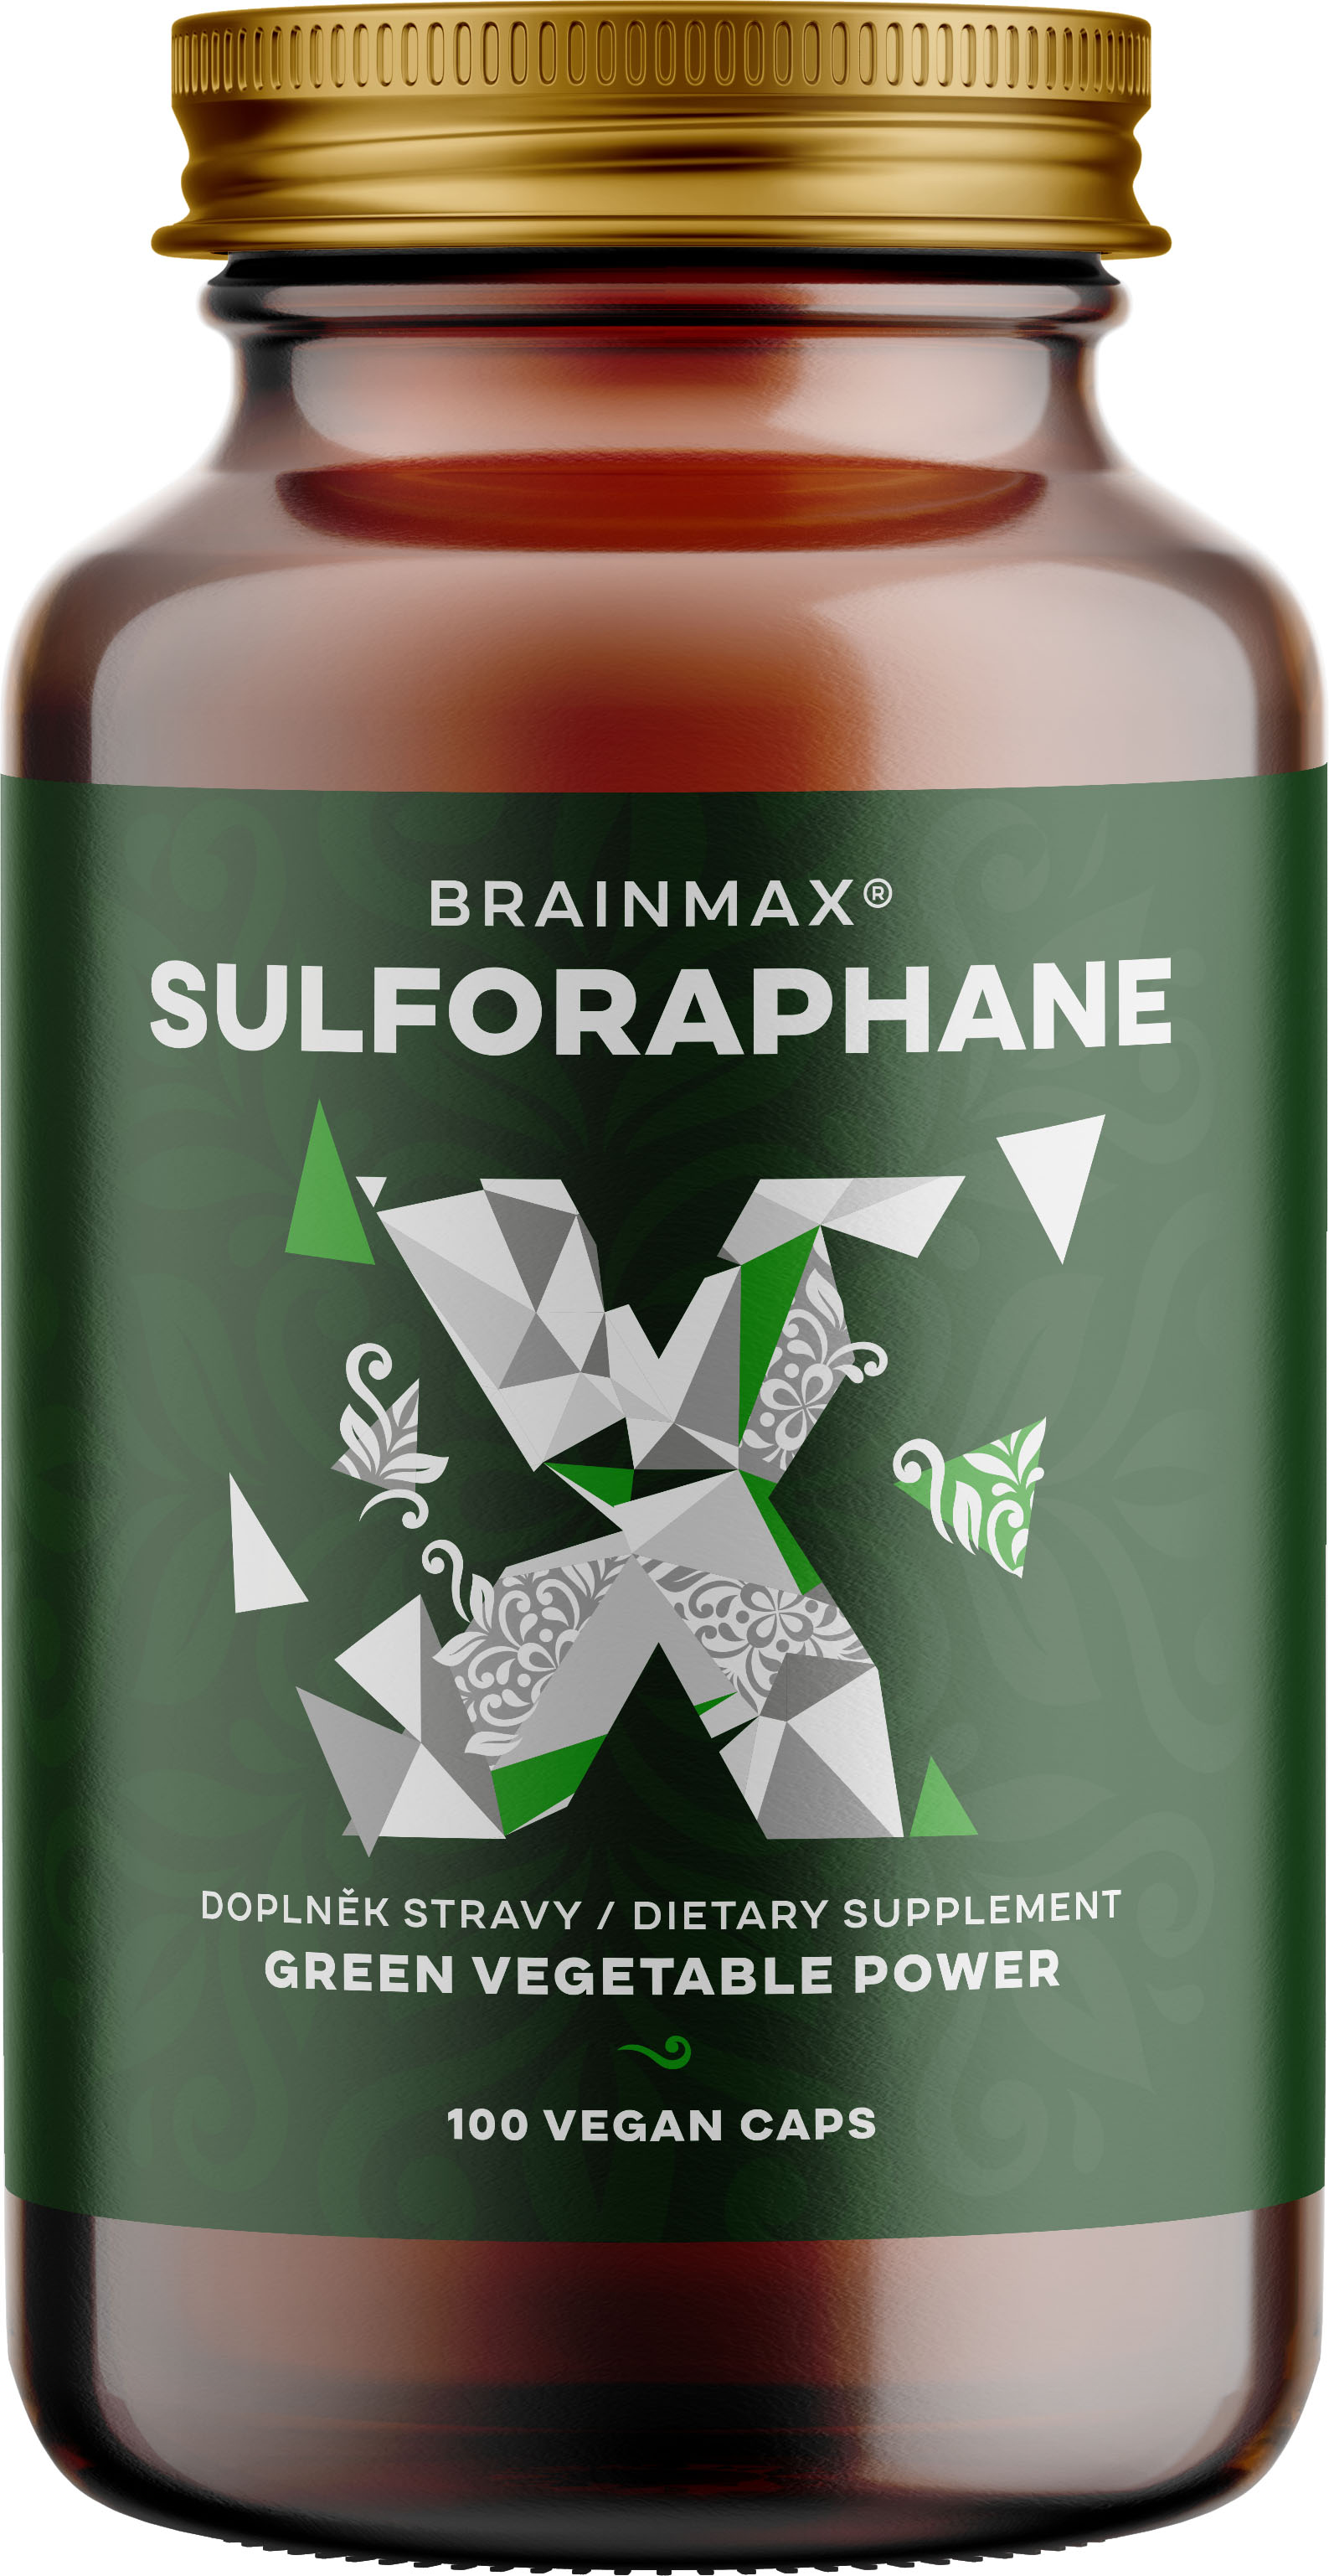 Levně BrainMax Sulforaphane 35 mg, Sulforafan, 100 rostlinných kapslí Sulforafan s myrosinázou, multispektrální účinek podpořený studiemi, 35 mg, doplněk stravy